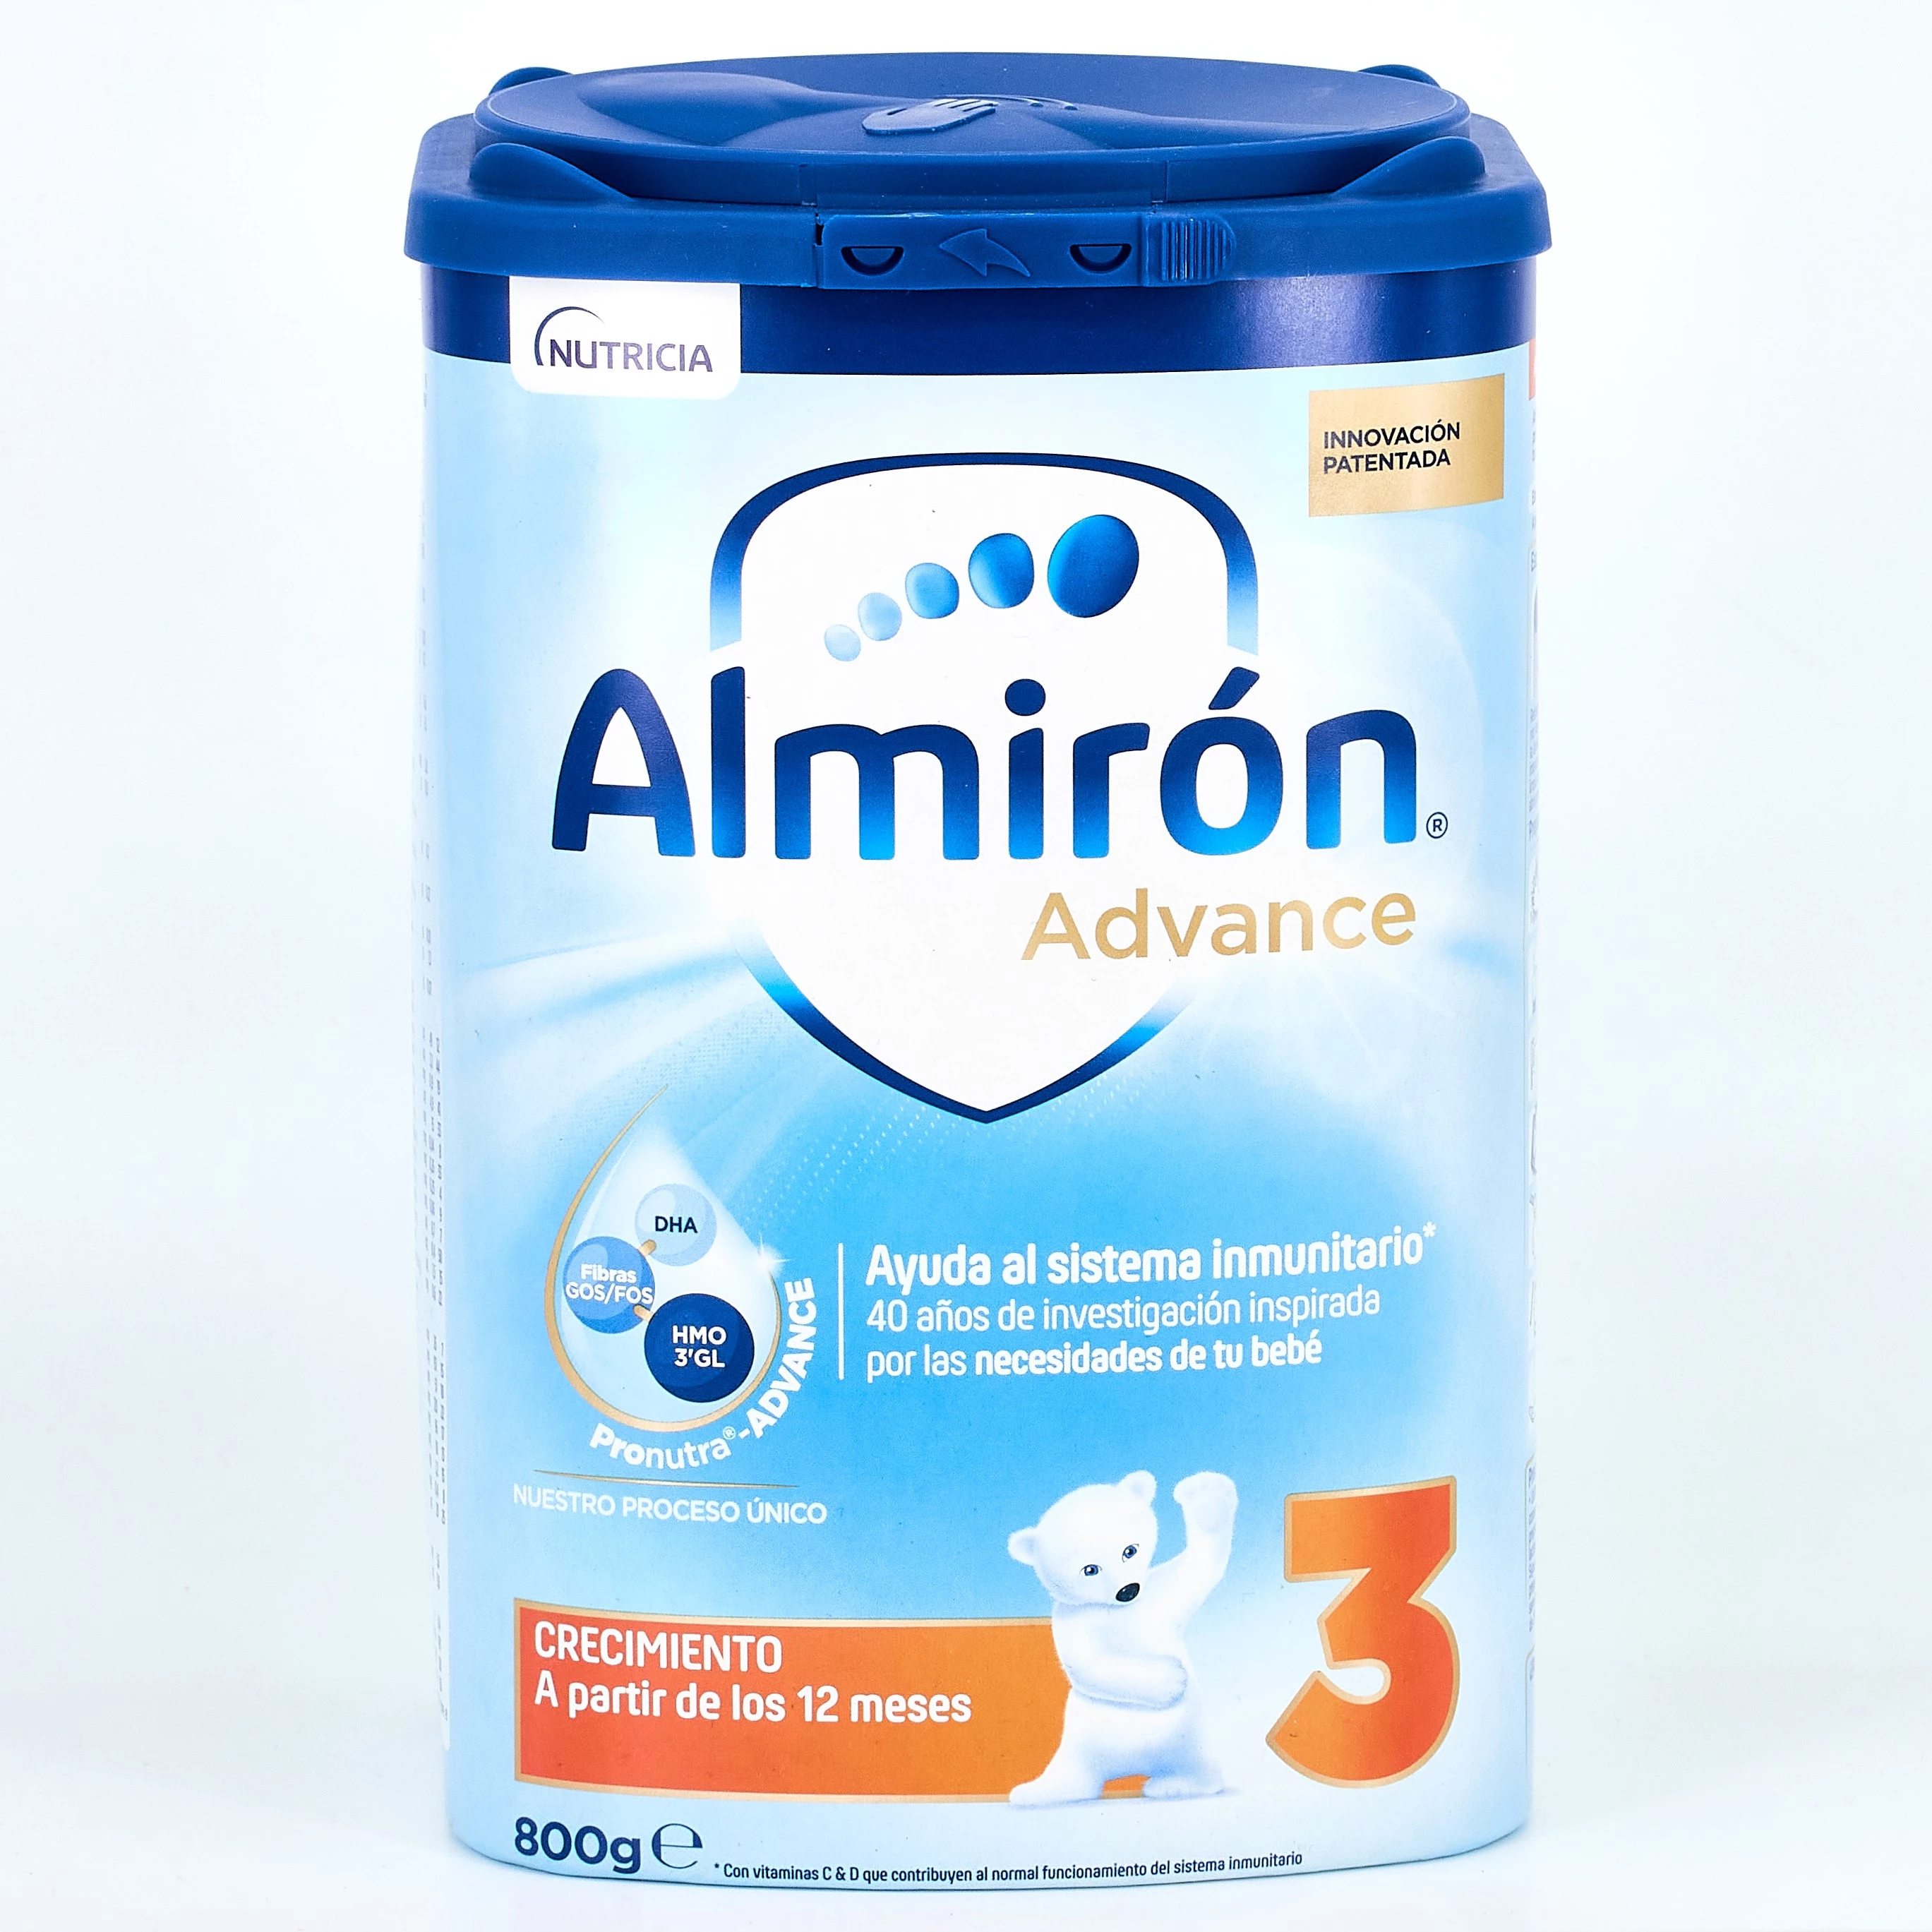 Comprar Almiron Advance+ Pronutra 3 Leche en Polvo, 800 g al precio | Farmacia Barata